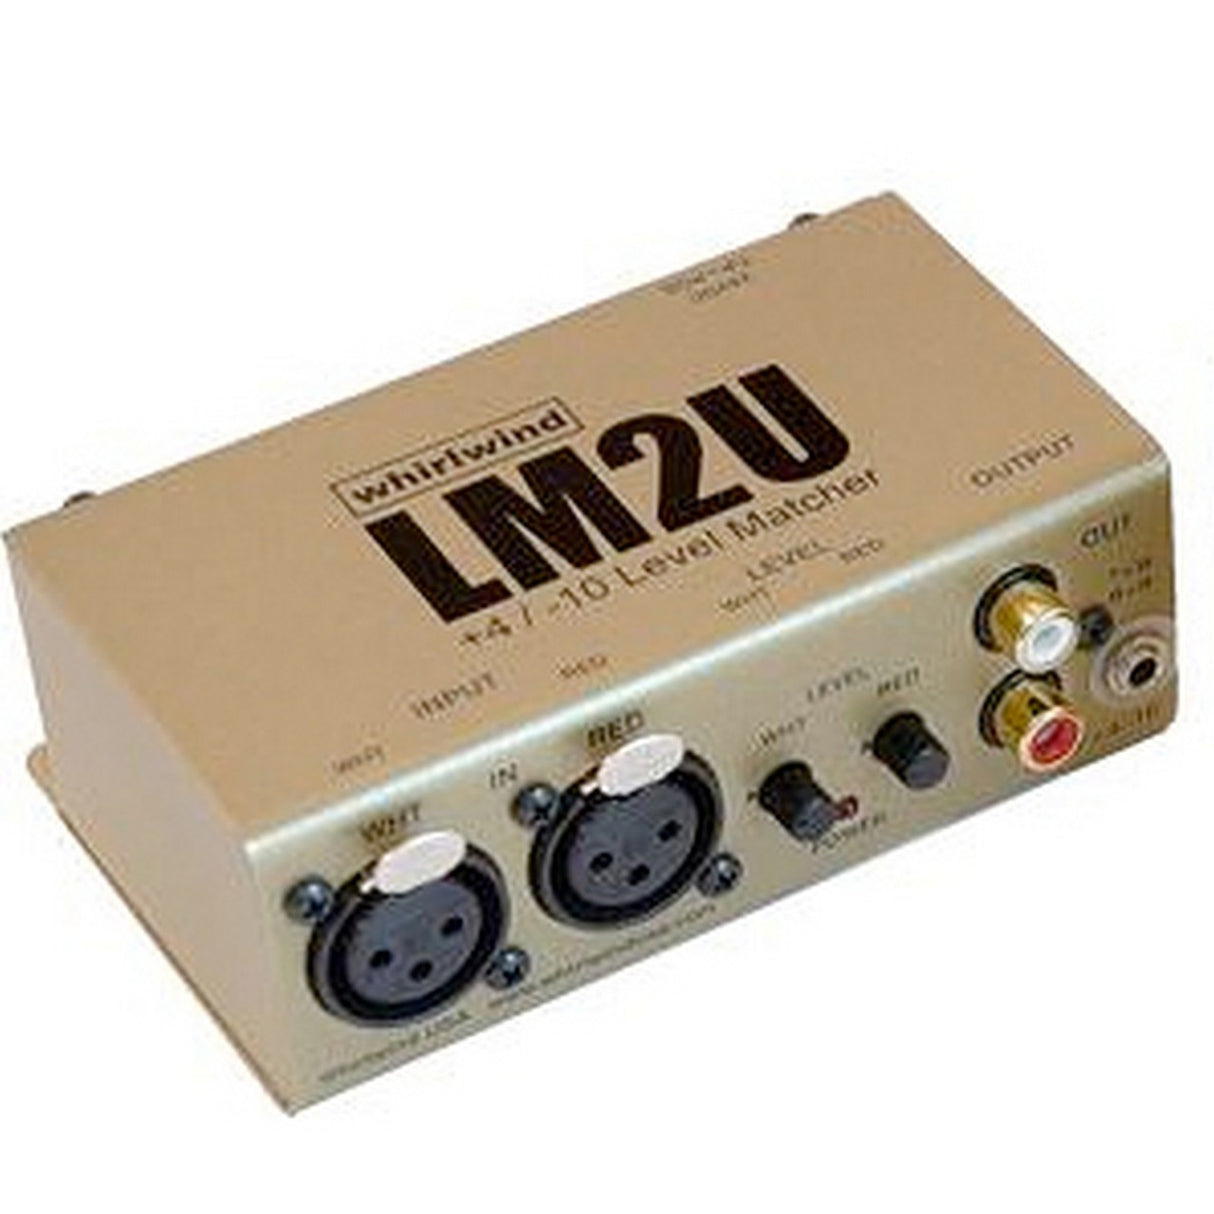 Whirlwind LM2U | 2 Channels +4dB XLRF to -10dB RCA / mini TRS Converter